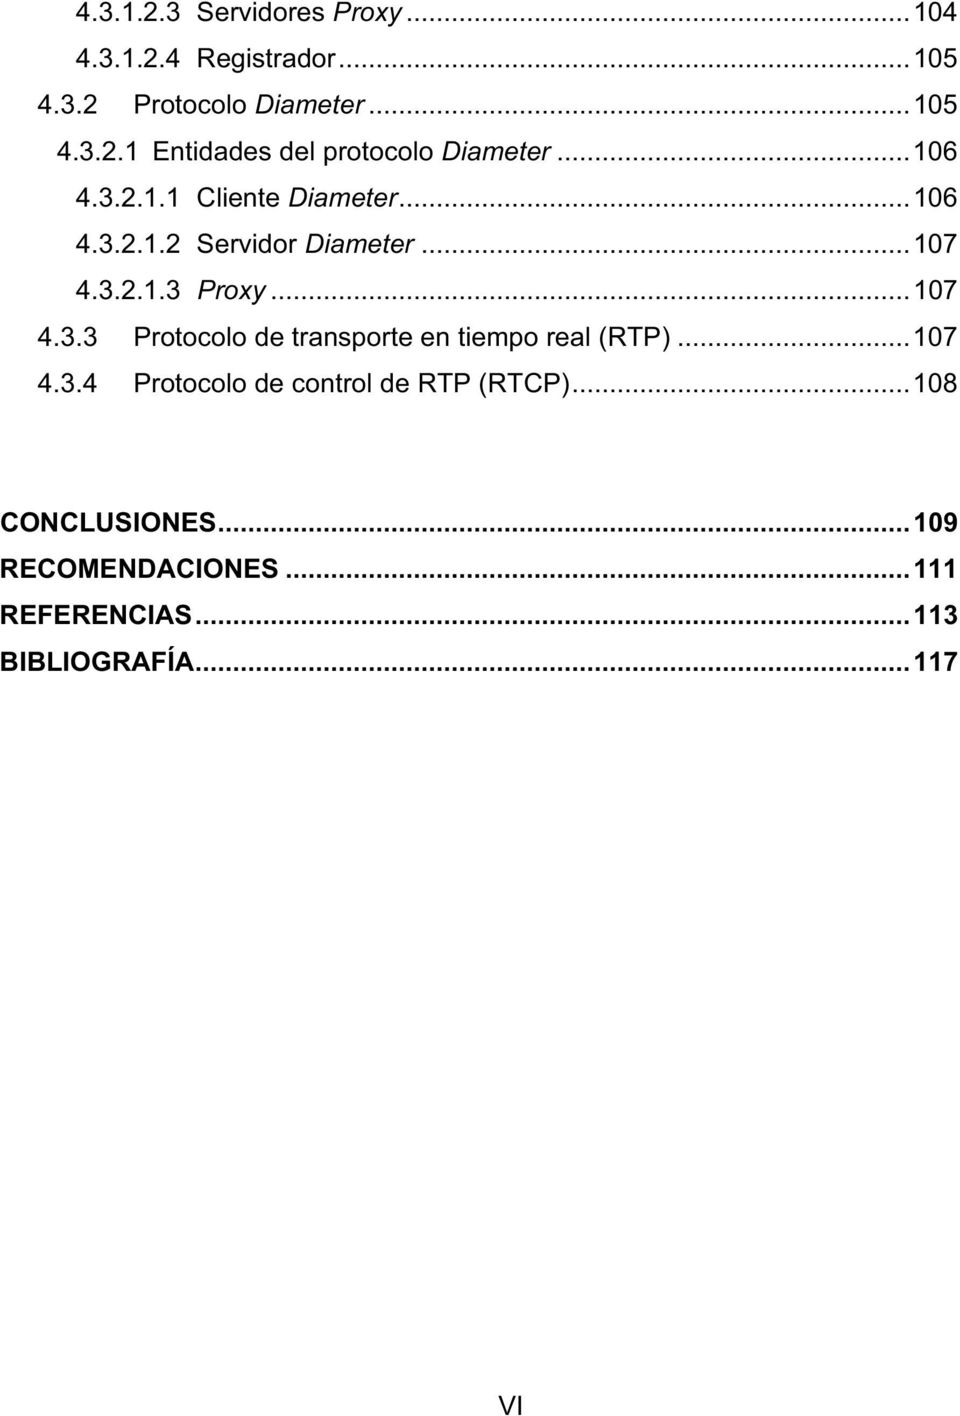 ..107 4.3.4 Protocolo de control de RTP (RTCP)...108 CONCLUSIONES...109 RECOMENDACIONES.